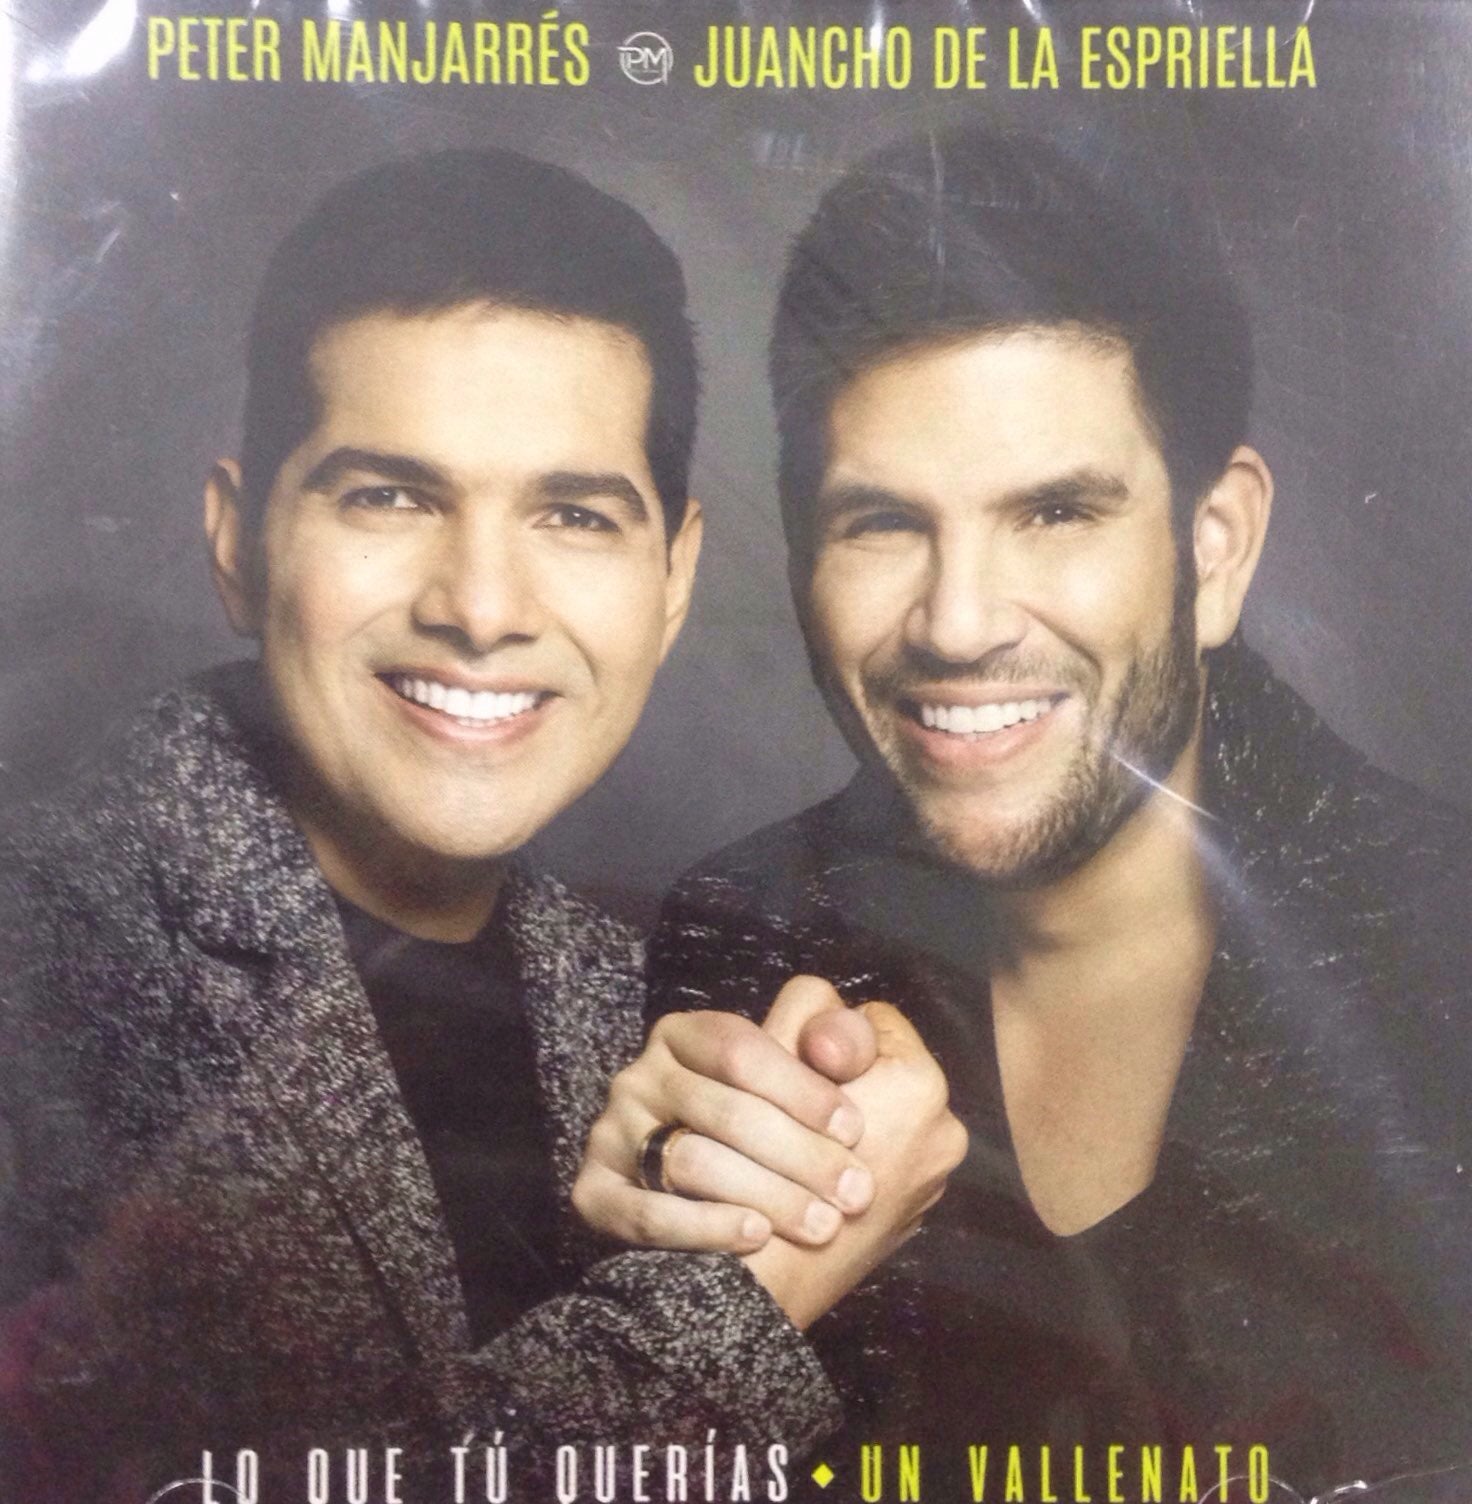 CD Peter Manjarrés Y Juancho De La Espriella - Lo Que Tu Querías Un Vallenato